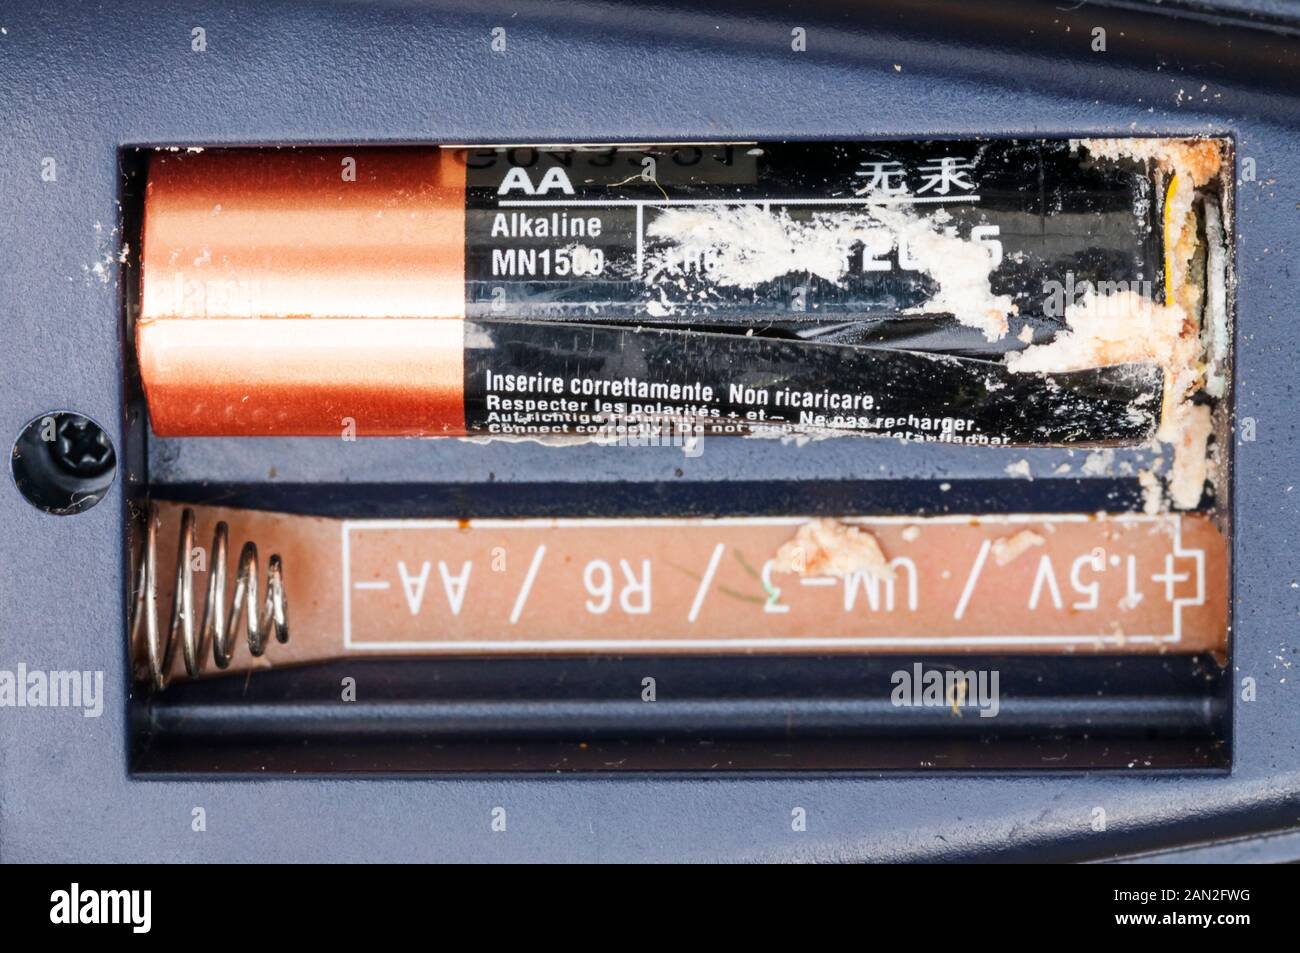 A leaking AA alkaline battery. Stock Photo